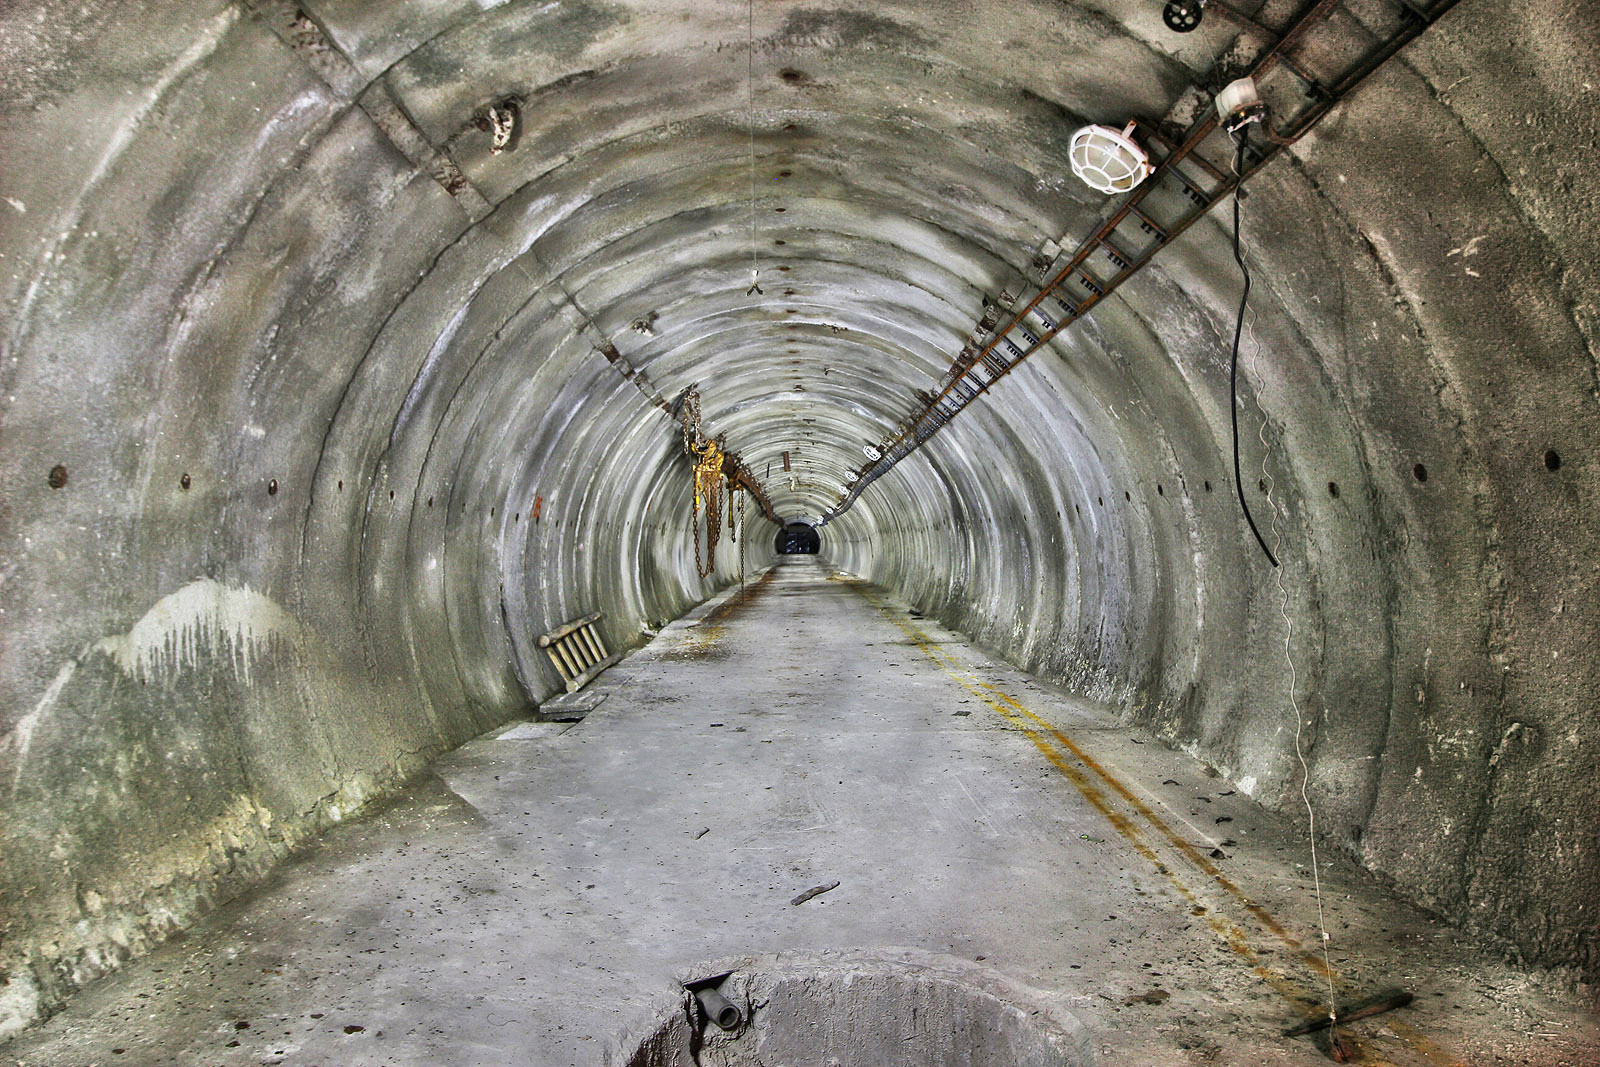 Tunel je rovný, suchý a čistý. Při pohledu od čelby zpět je vidět polovinu kruhové jímky, do které ústí z nějasných důvodů kovová trubka. Mohlo by jít o zařízení provizorní betonárky?